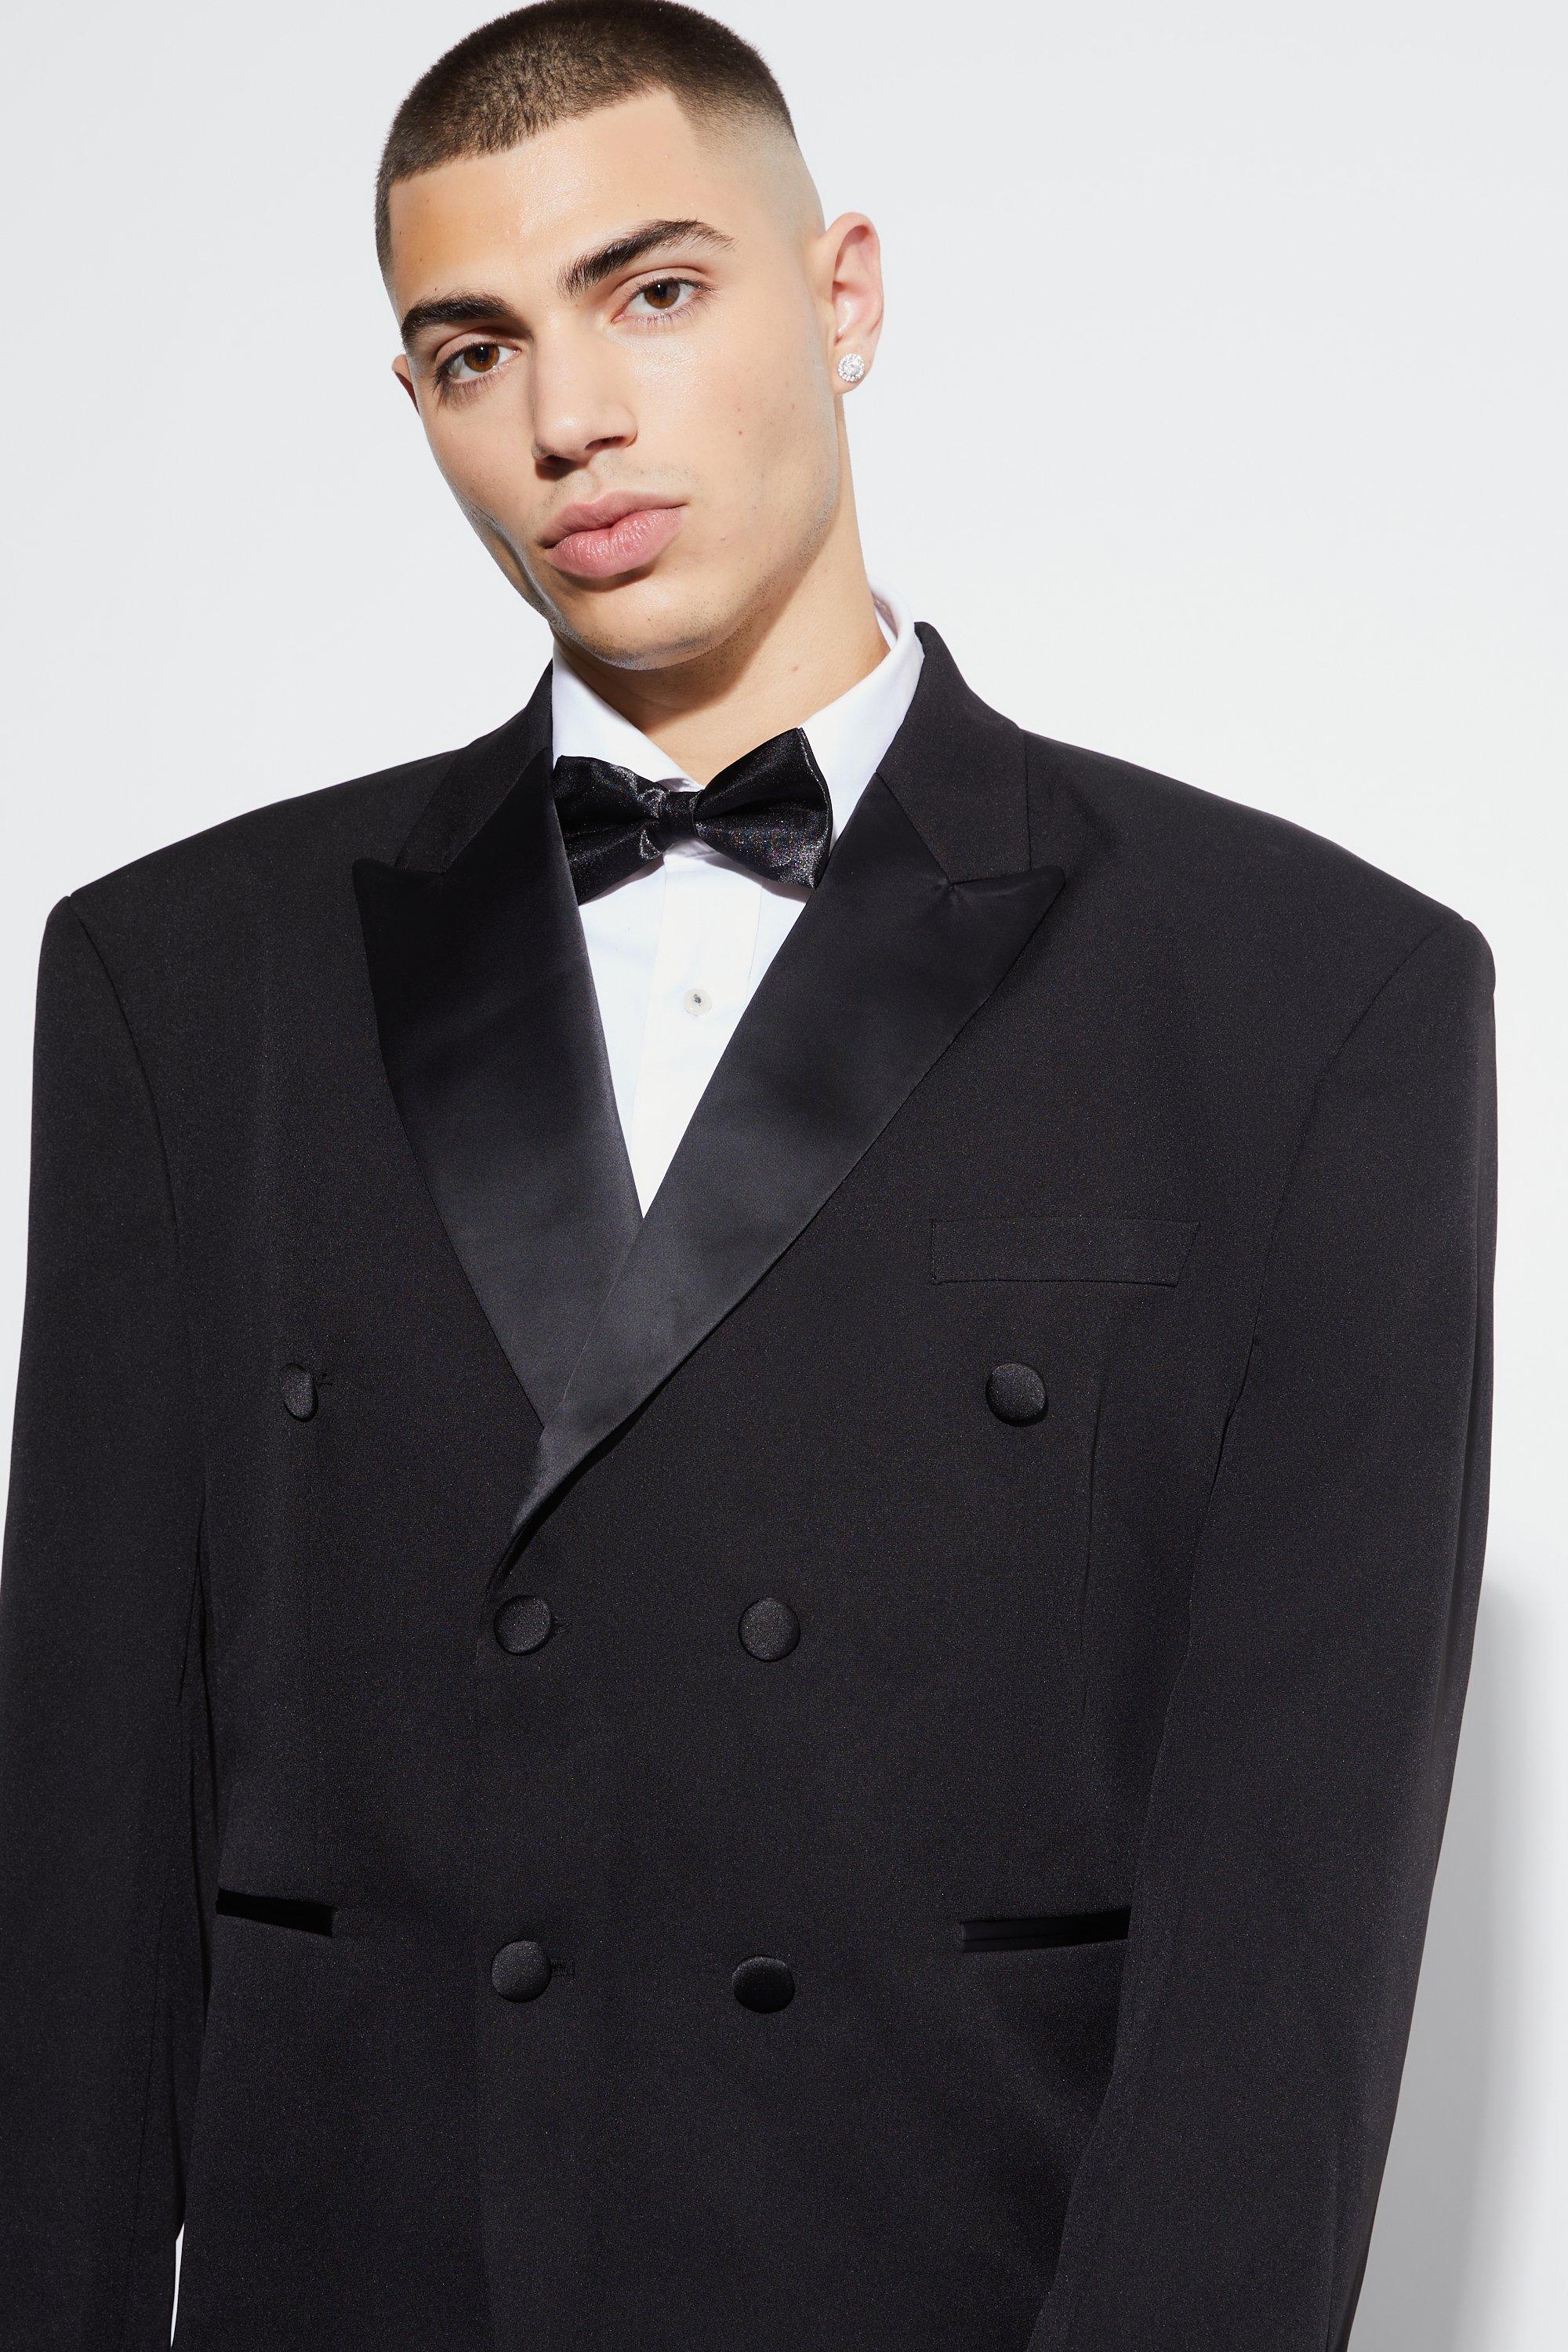 Men's Low Cut Backless Tuxedo Vest Halter Jacket Top with Bow Tie Suit - 3  Button Front